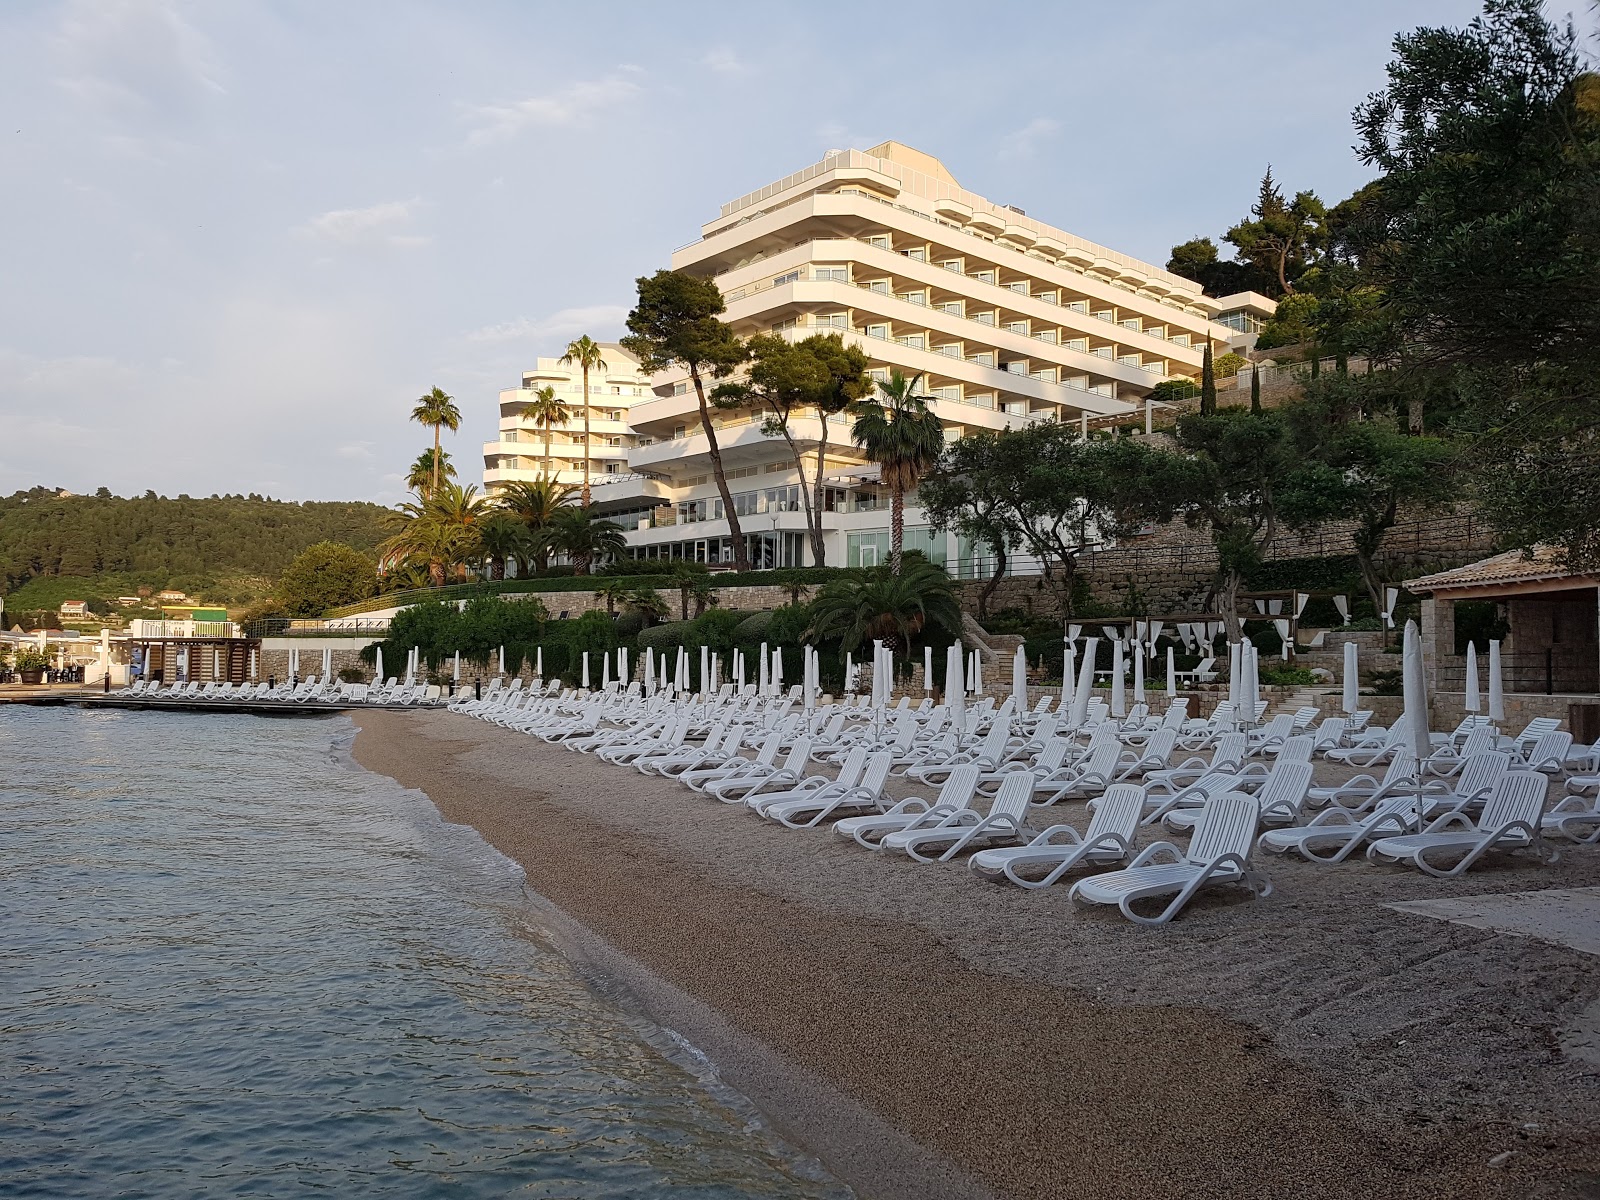 Foto av Stranden Otok Sipan II hotellområde